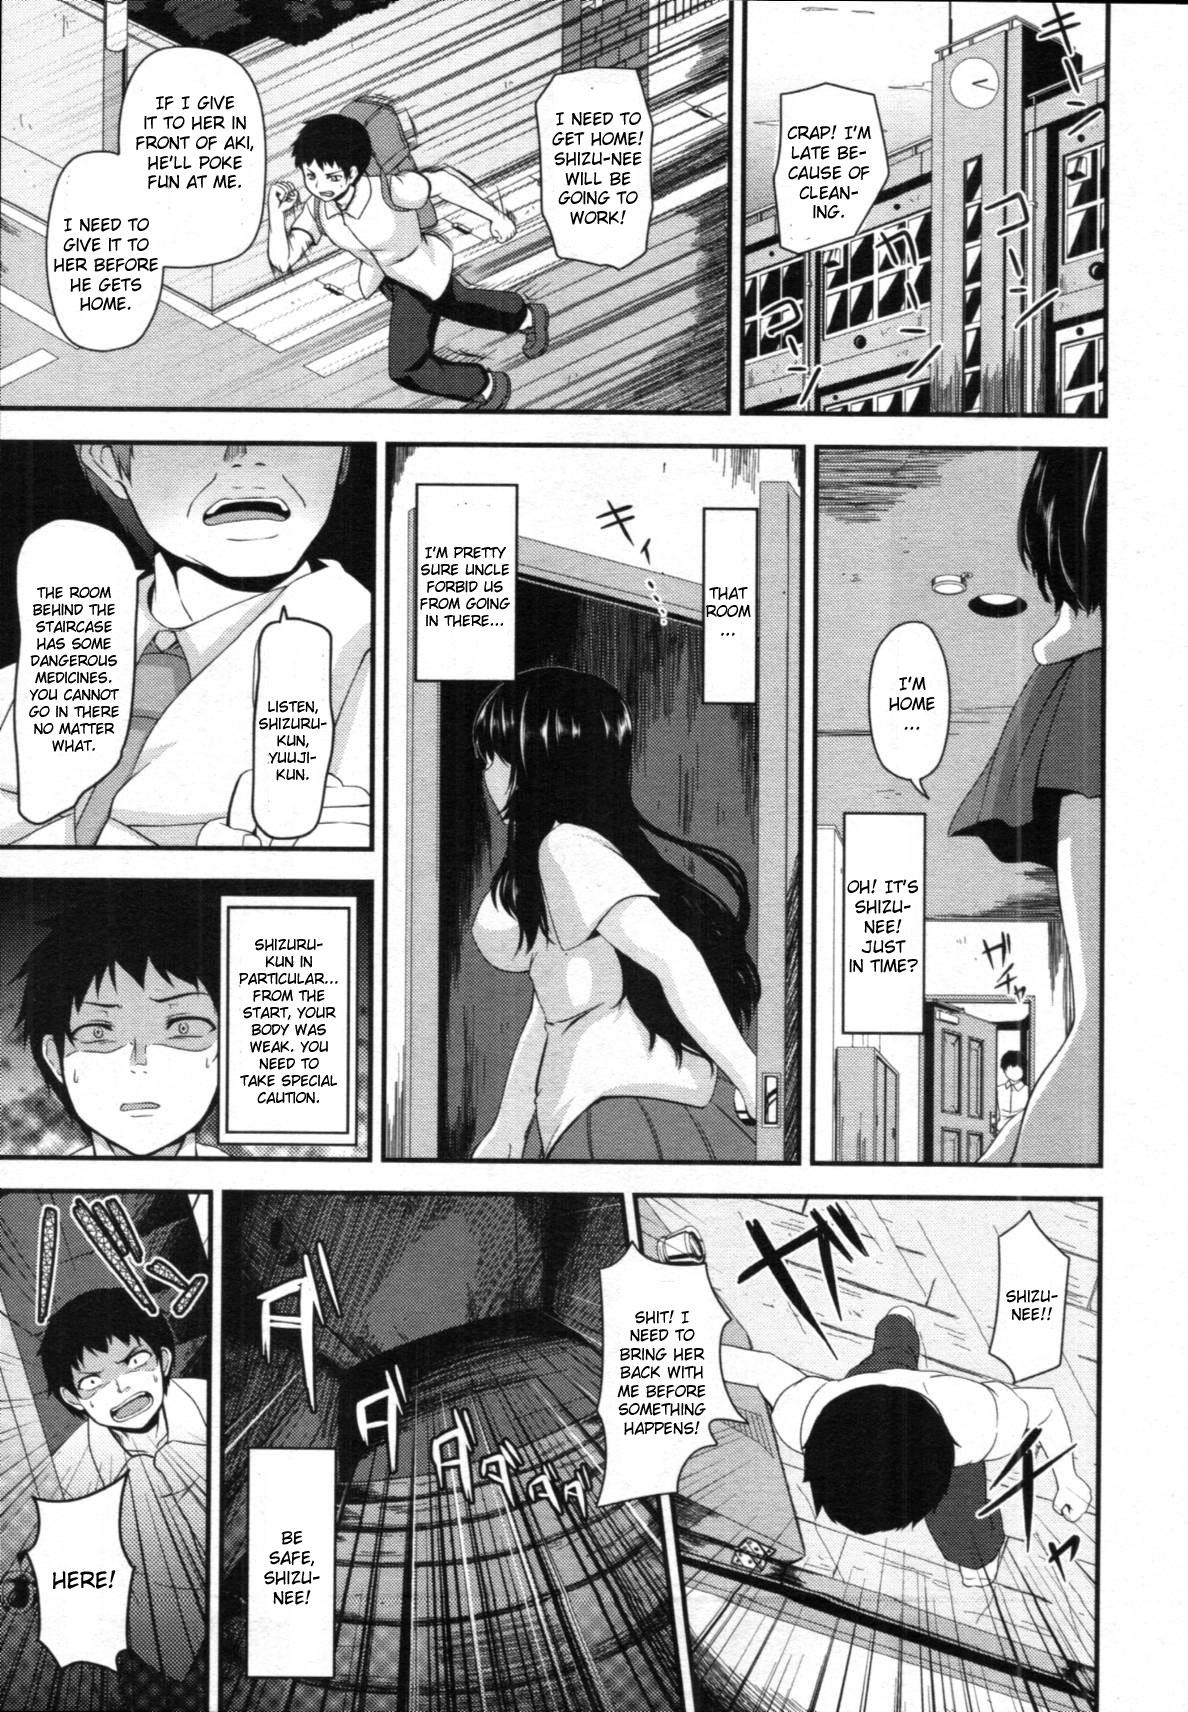 She Kyoudai no Naka Ass Licking - Page 3